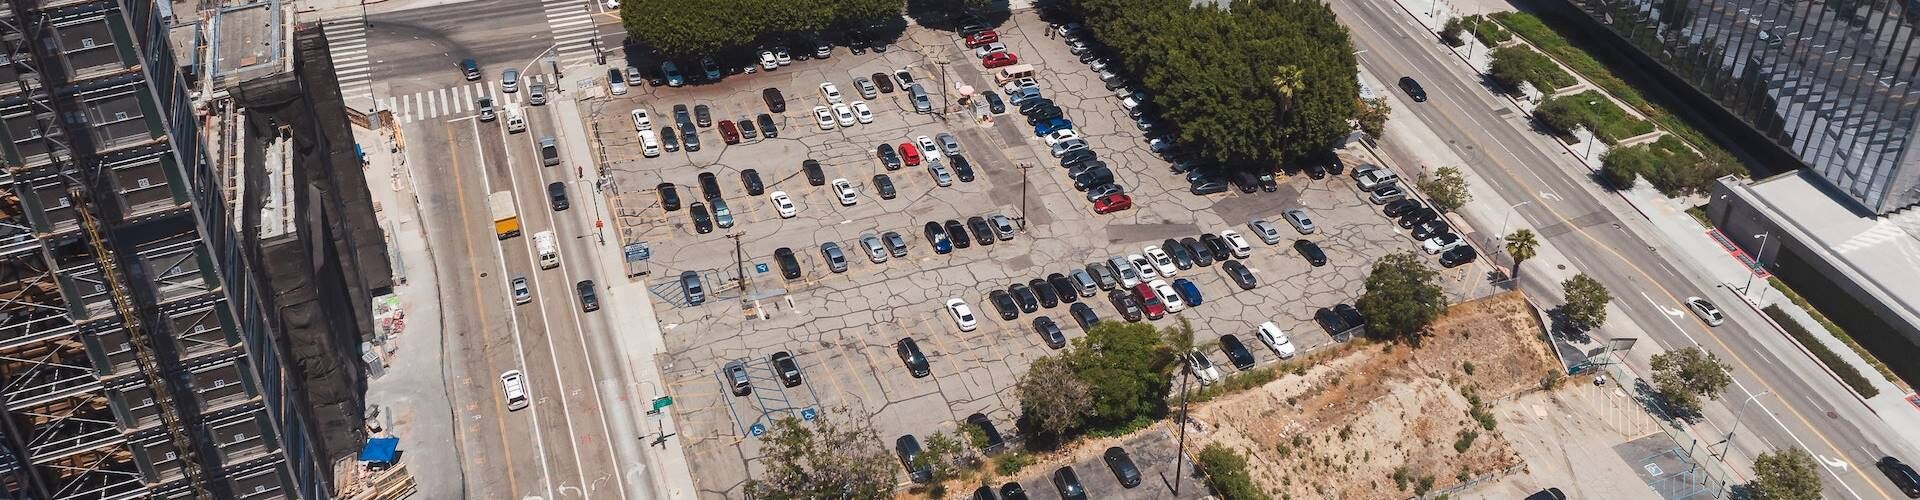 ¿Dónde aparcar en Fira de Barcelona?